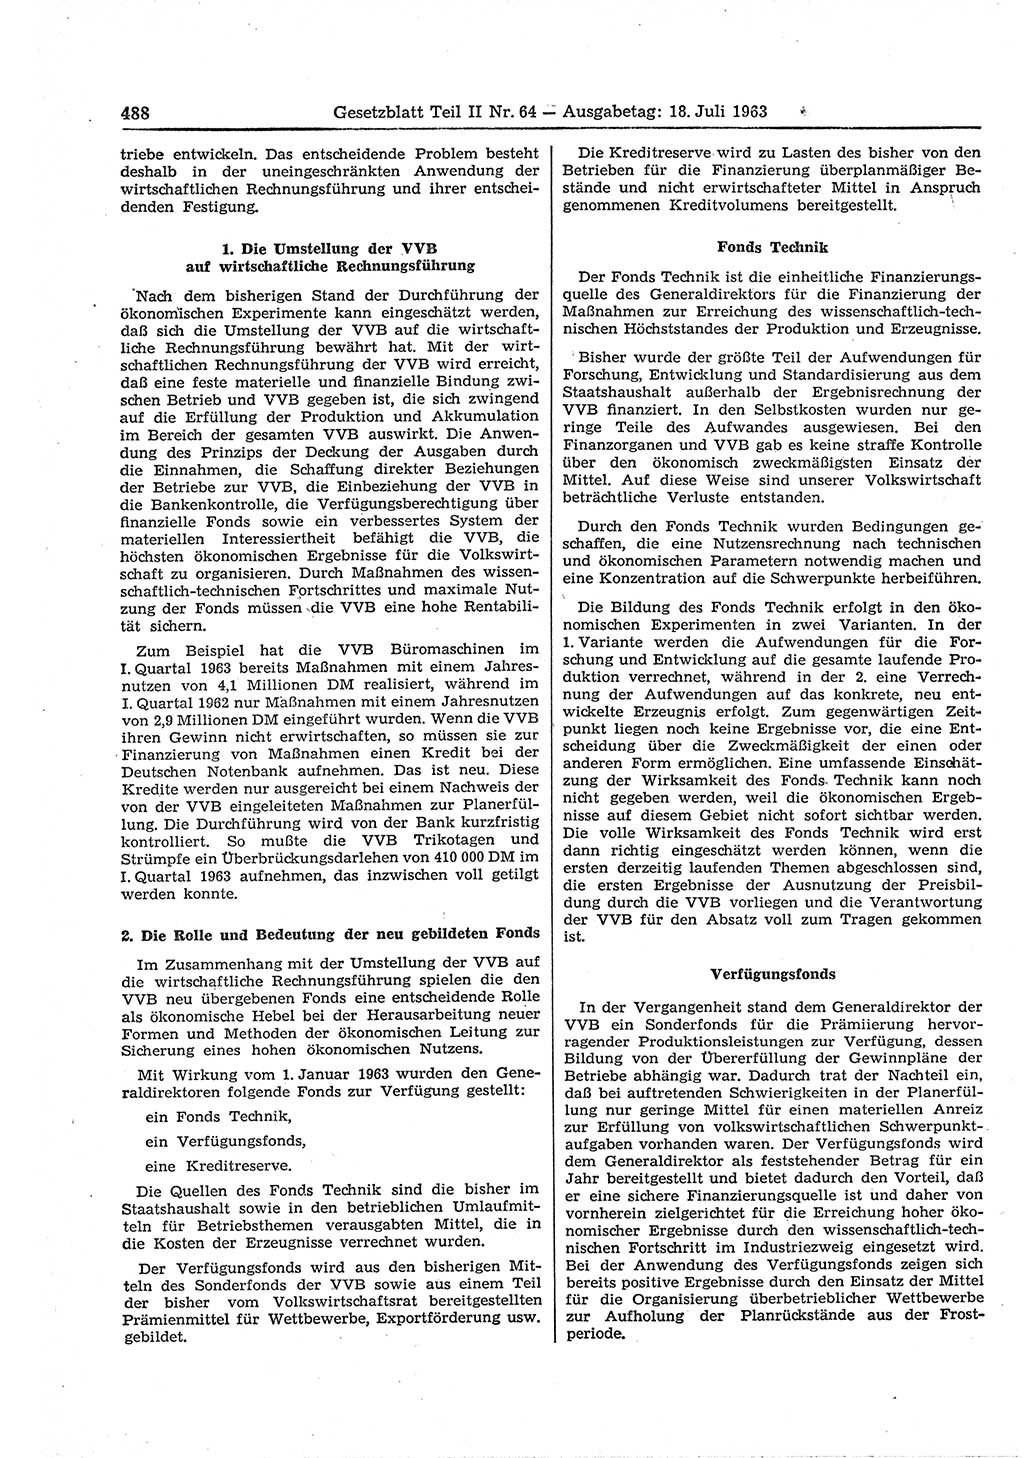 Gesetzblatt (GBl.) der Deutschen Demokratischen Republik (DDR) Teil ⅠⅠ 1963, Seite 488 (GBl. DDR ⅠⅠ 1963, S. 488)